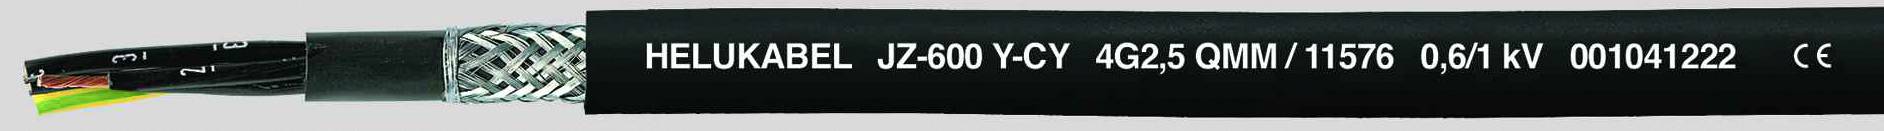 HELUKABEL JZ-600-Y-CY Steuerleitung 5 G 1 mm² Schwarz 11519-500 500 m